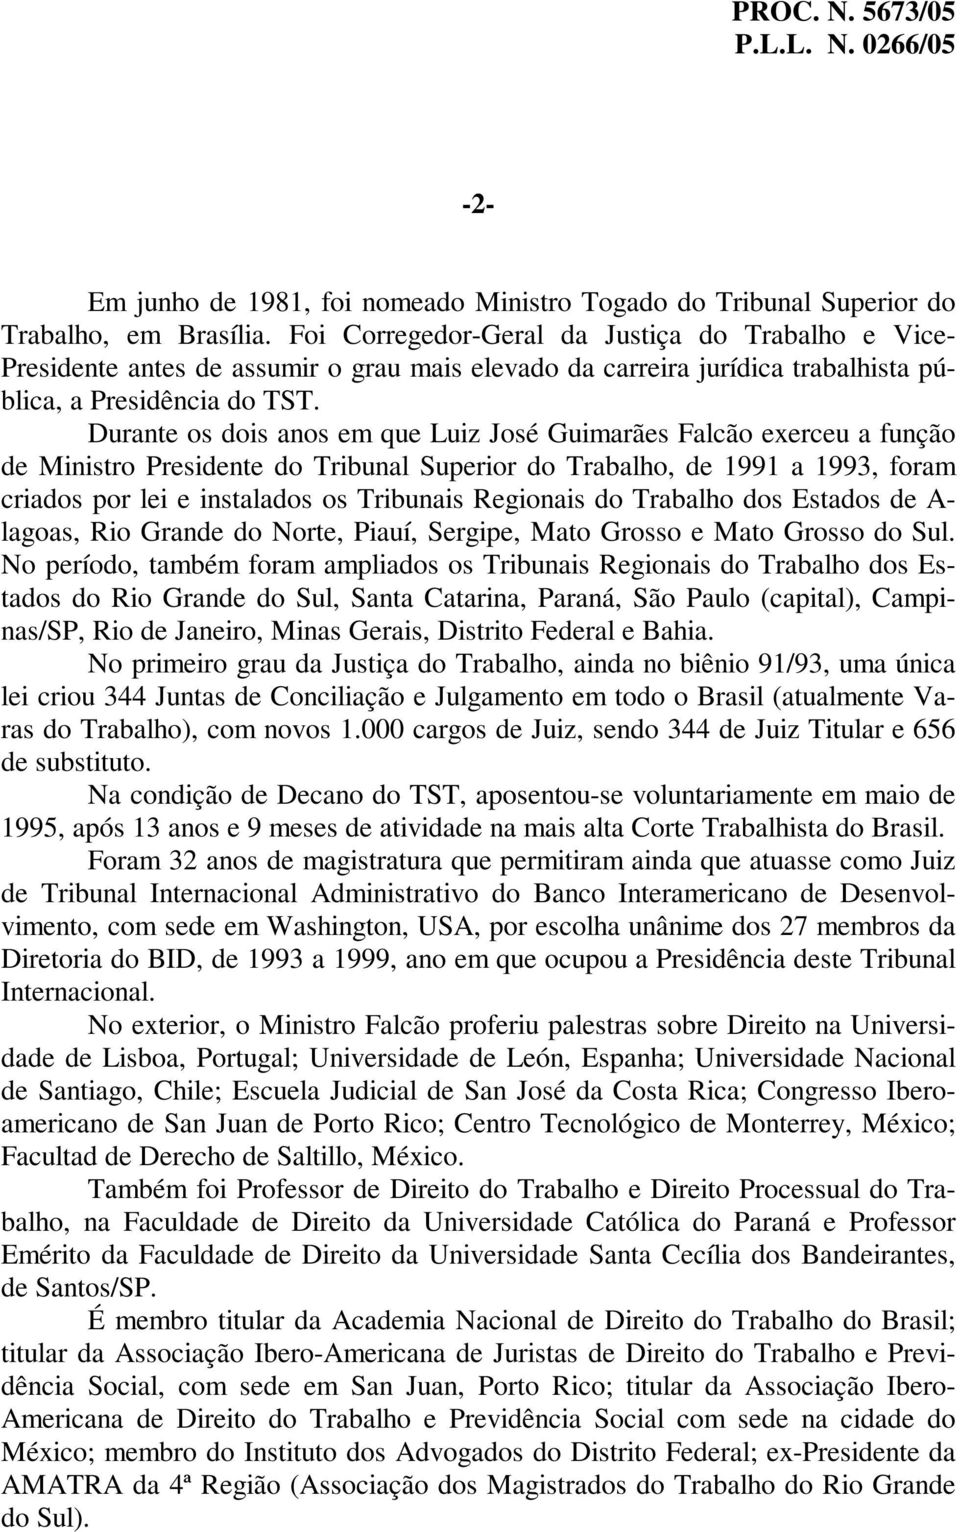 Durante os dois anos em que Luiz José Guimarães Falcão exerceu a função de Ministro Presidente do Tribunal Superior do Trabalho, de 1991 a 1993, foram criados por lei e instalados os Tribunais